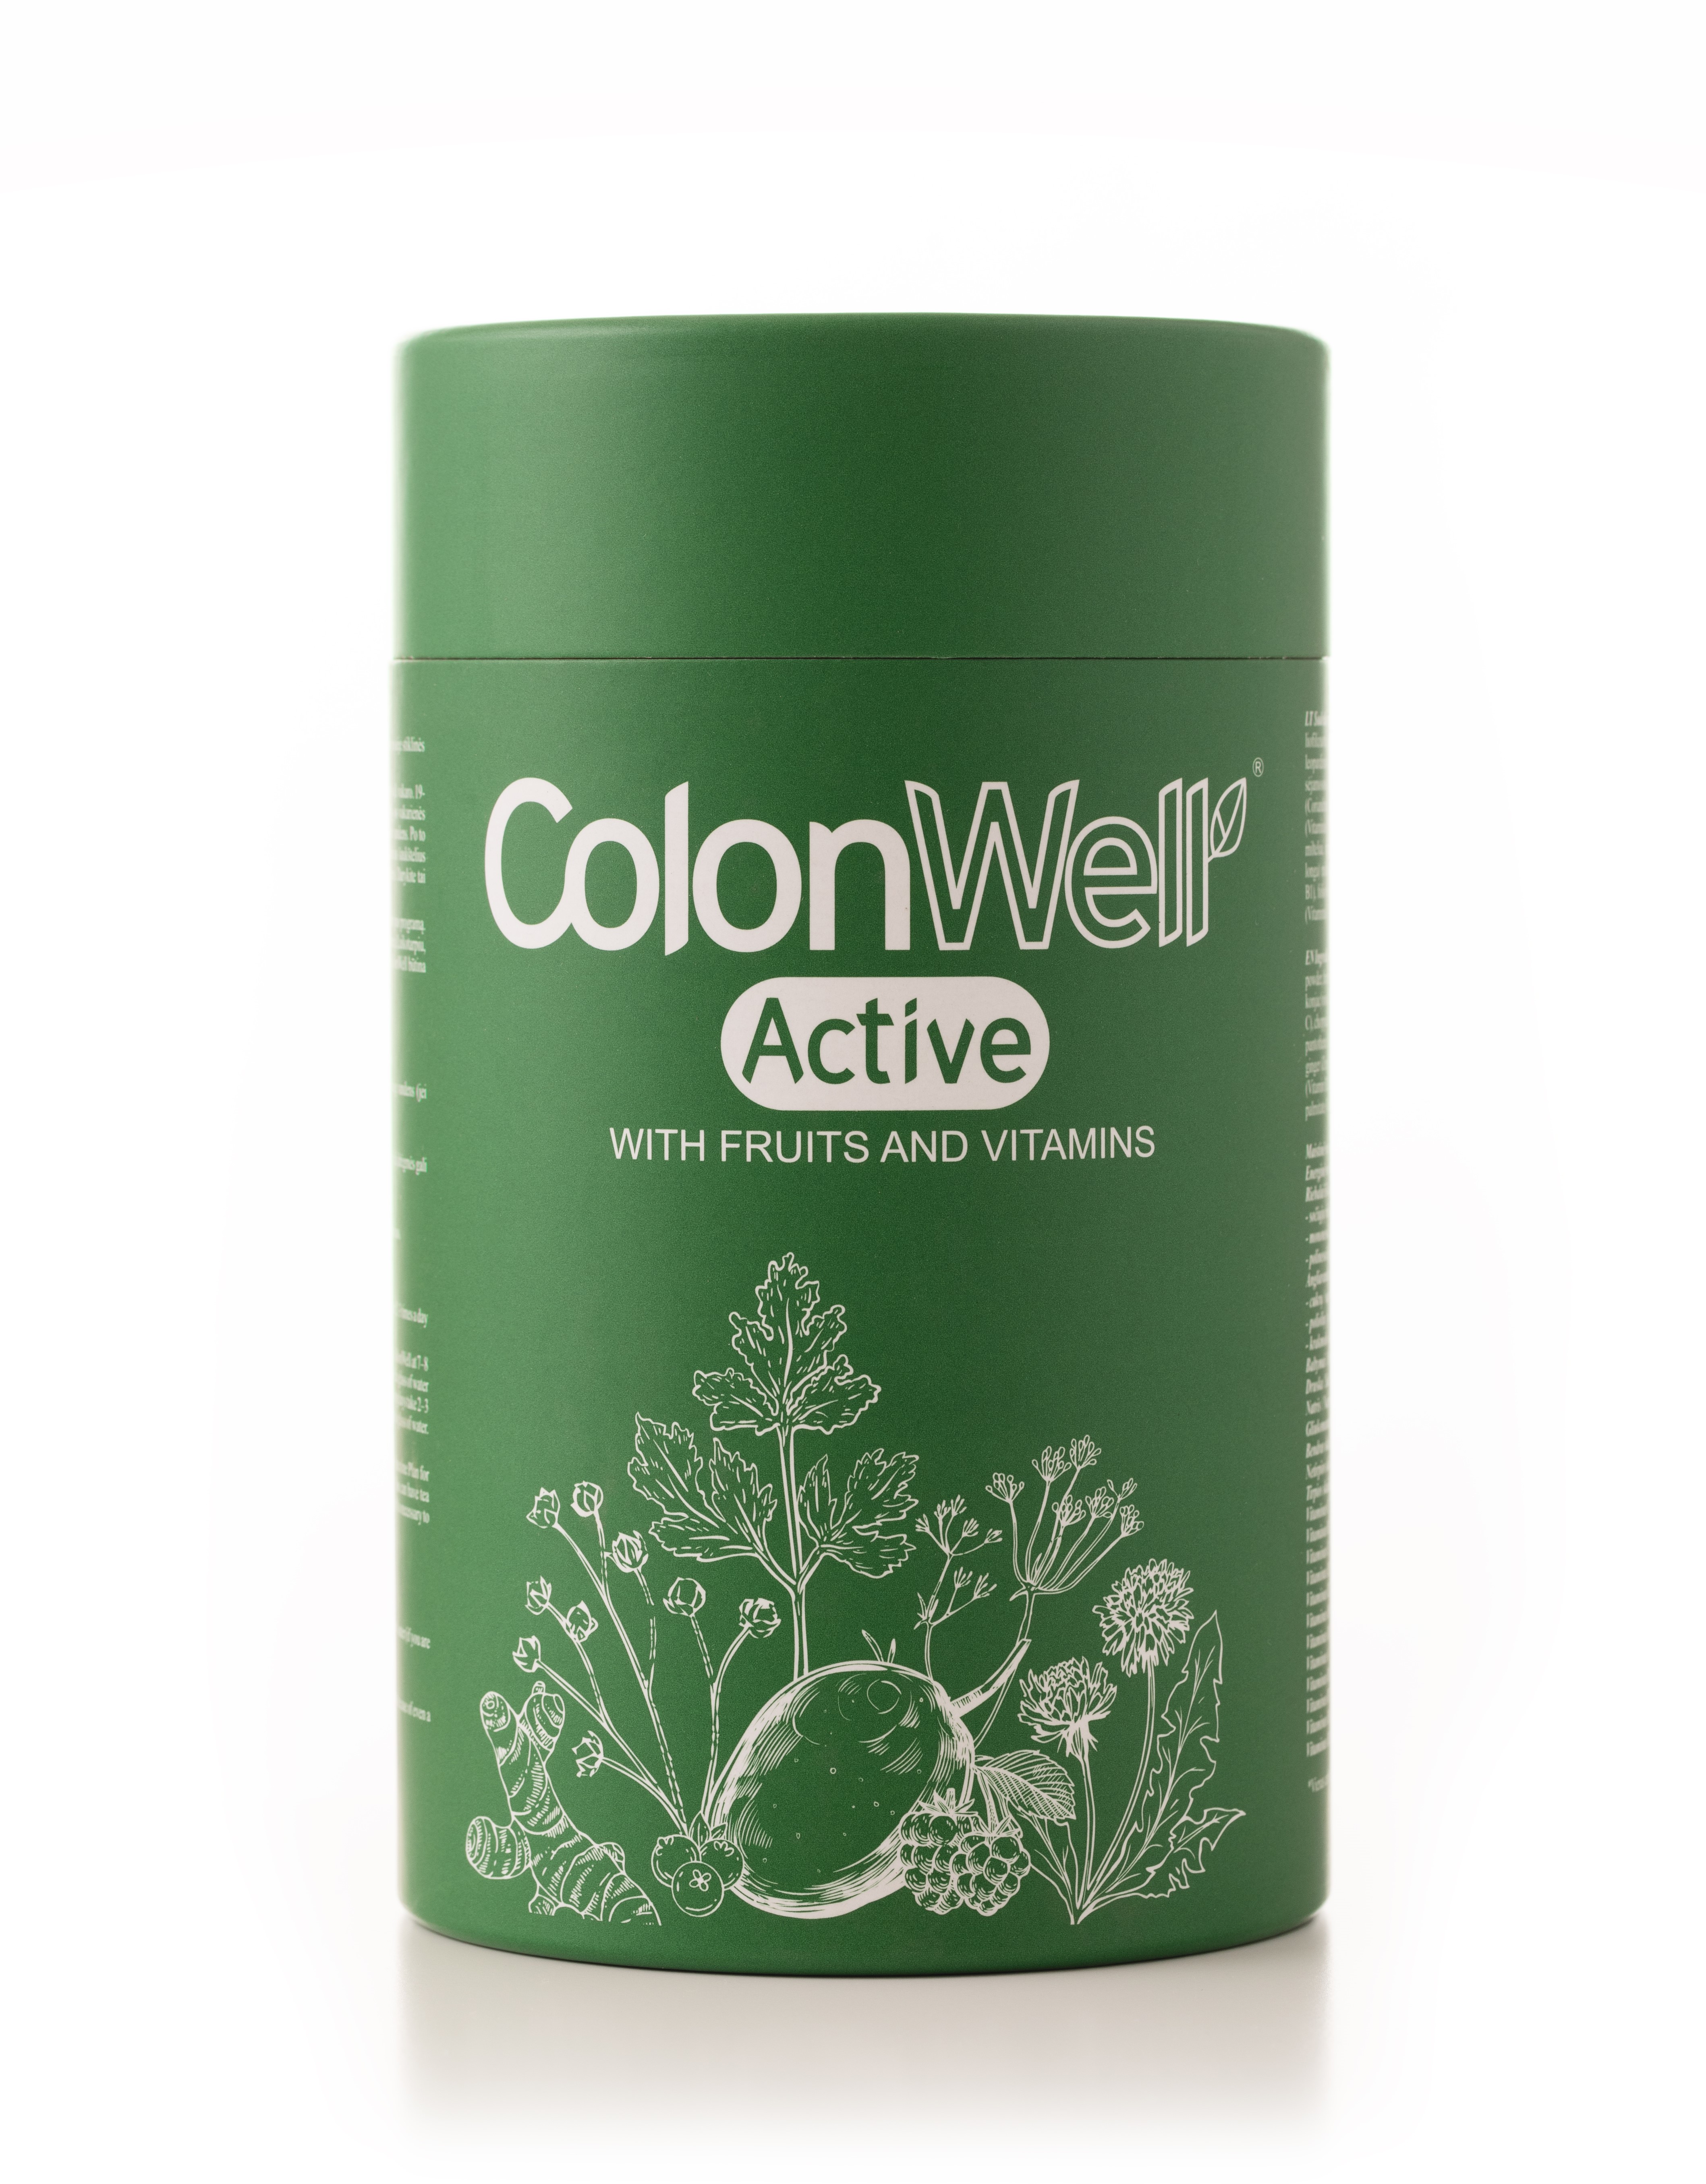 Colonwell.lt produktas - ColonWell Active - žolelių ir sėklų mišinys (su vaisiais ir vitaminais) 350g.